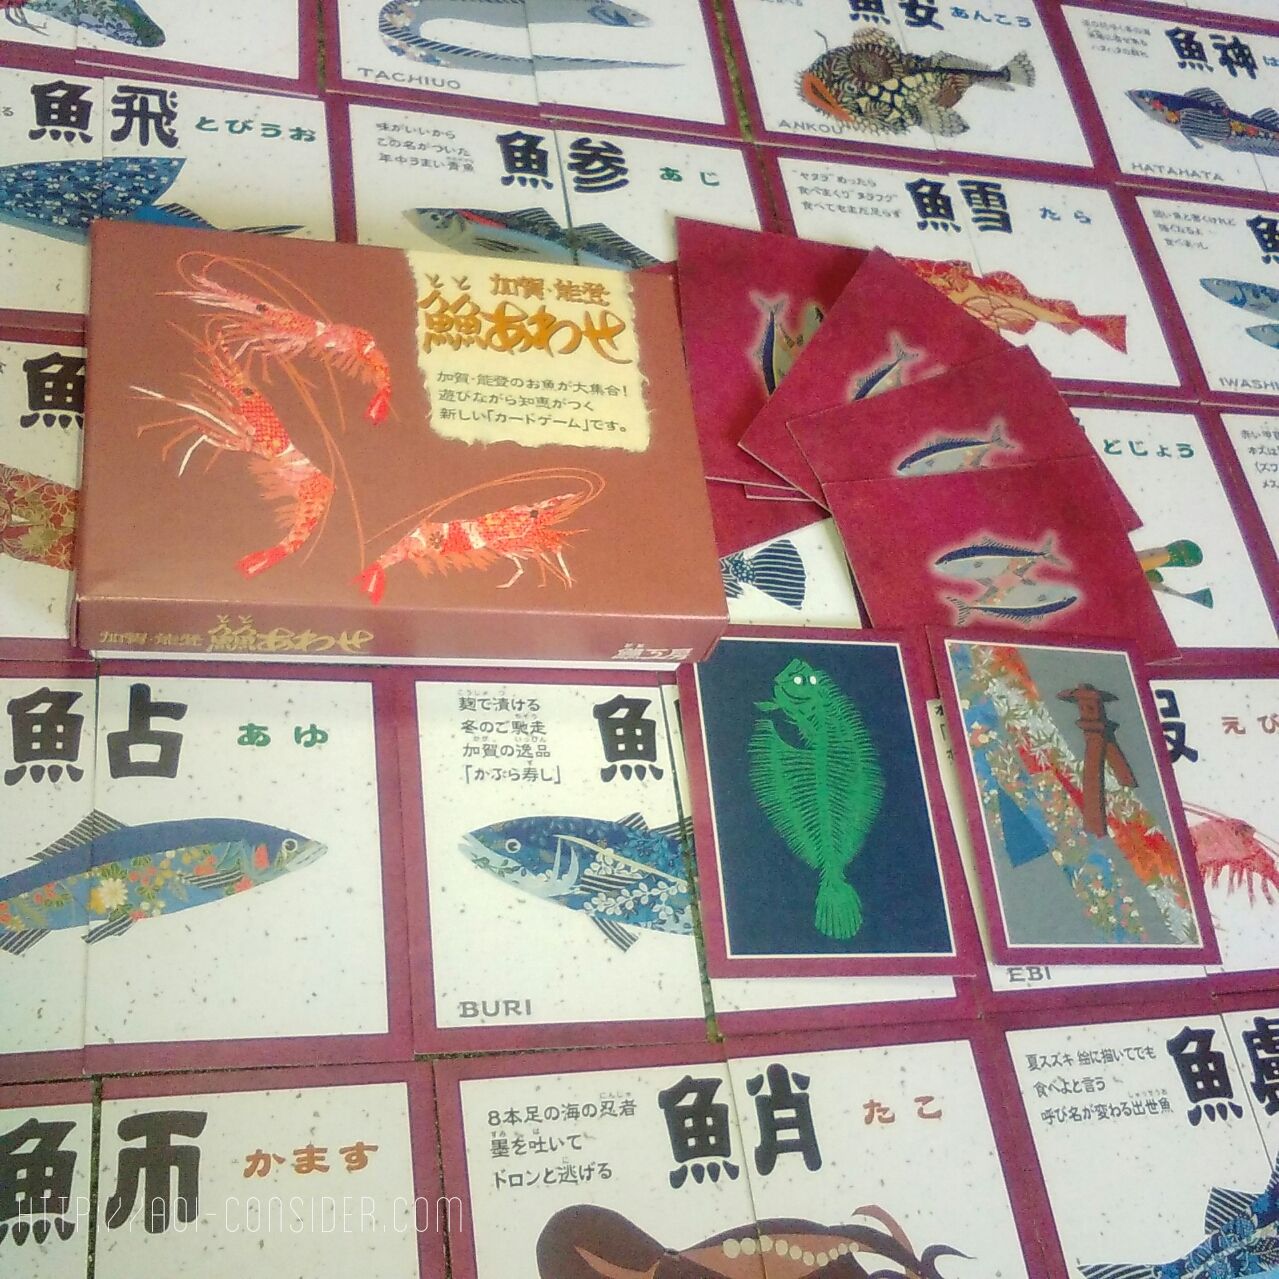 ととあわせで魚の漢字を学ぶ 子供の教育にも楽しい 珍しいカード